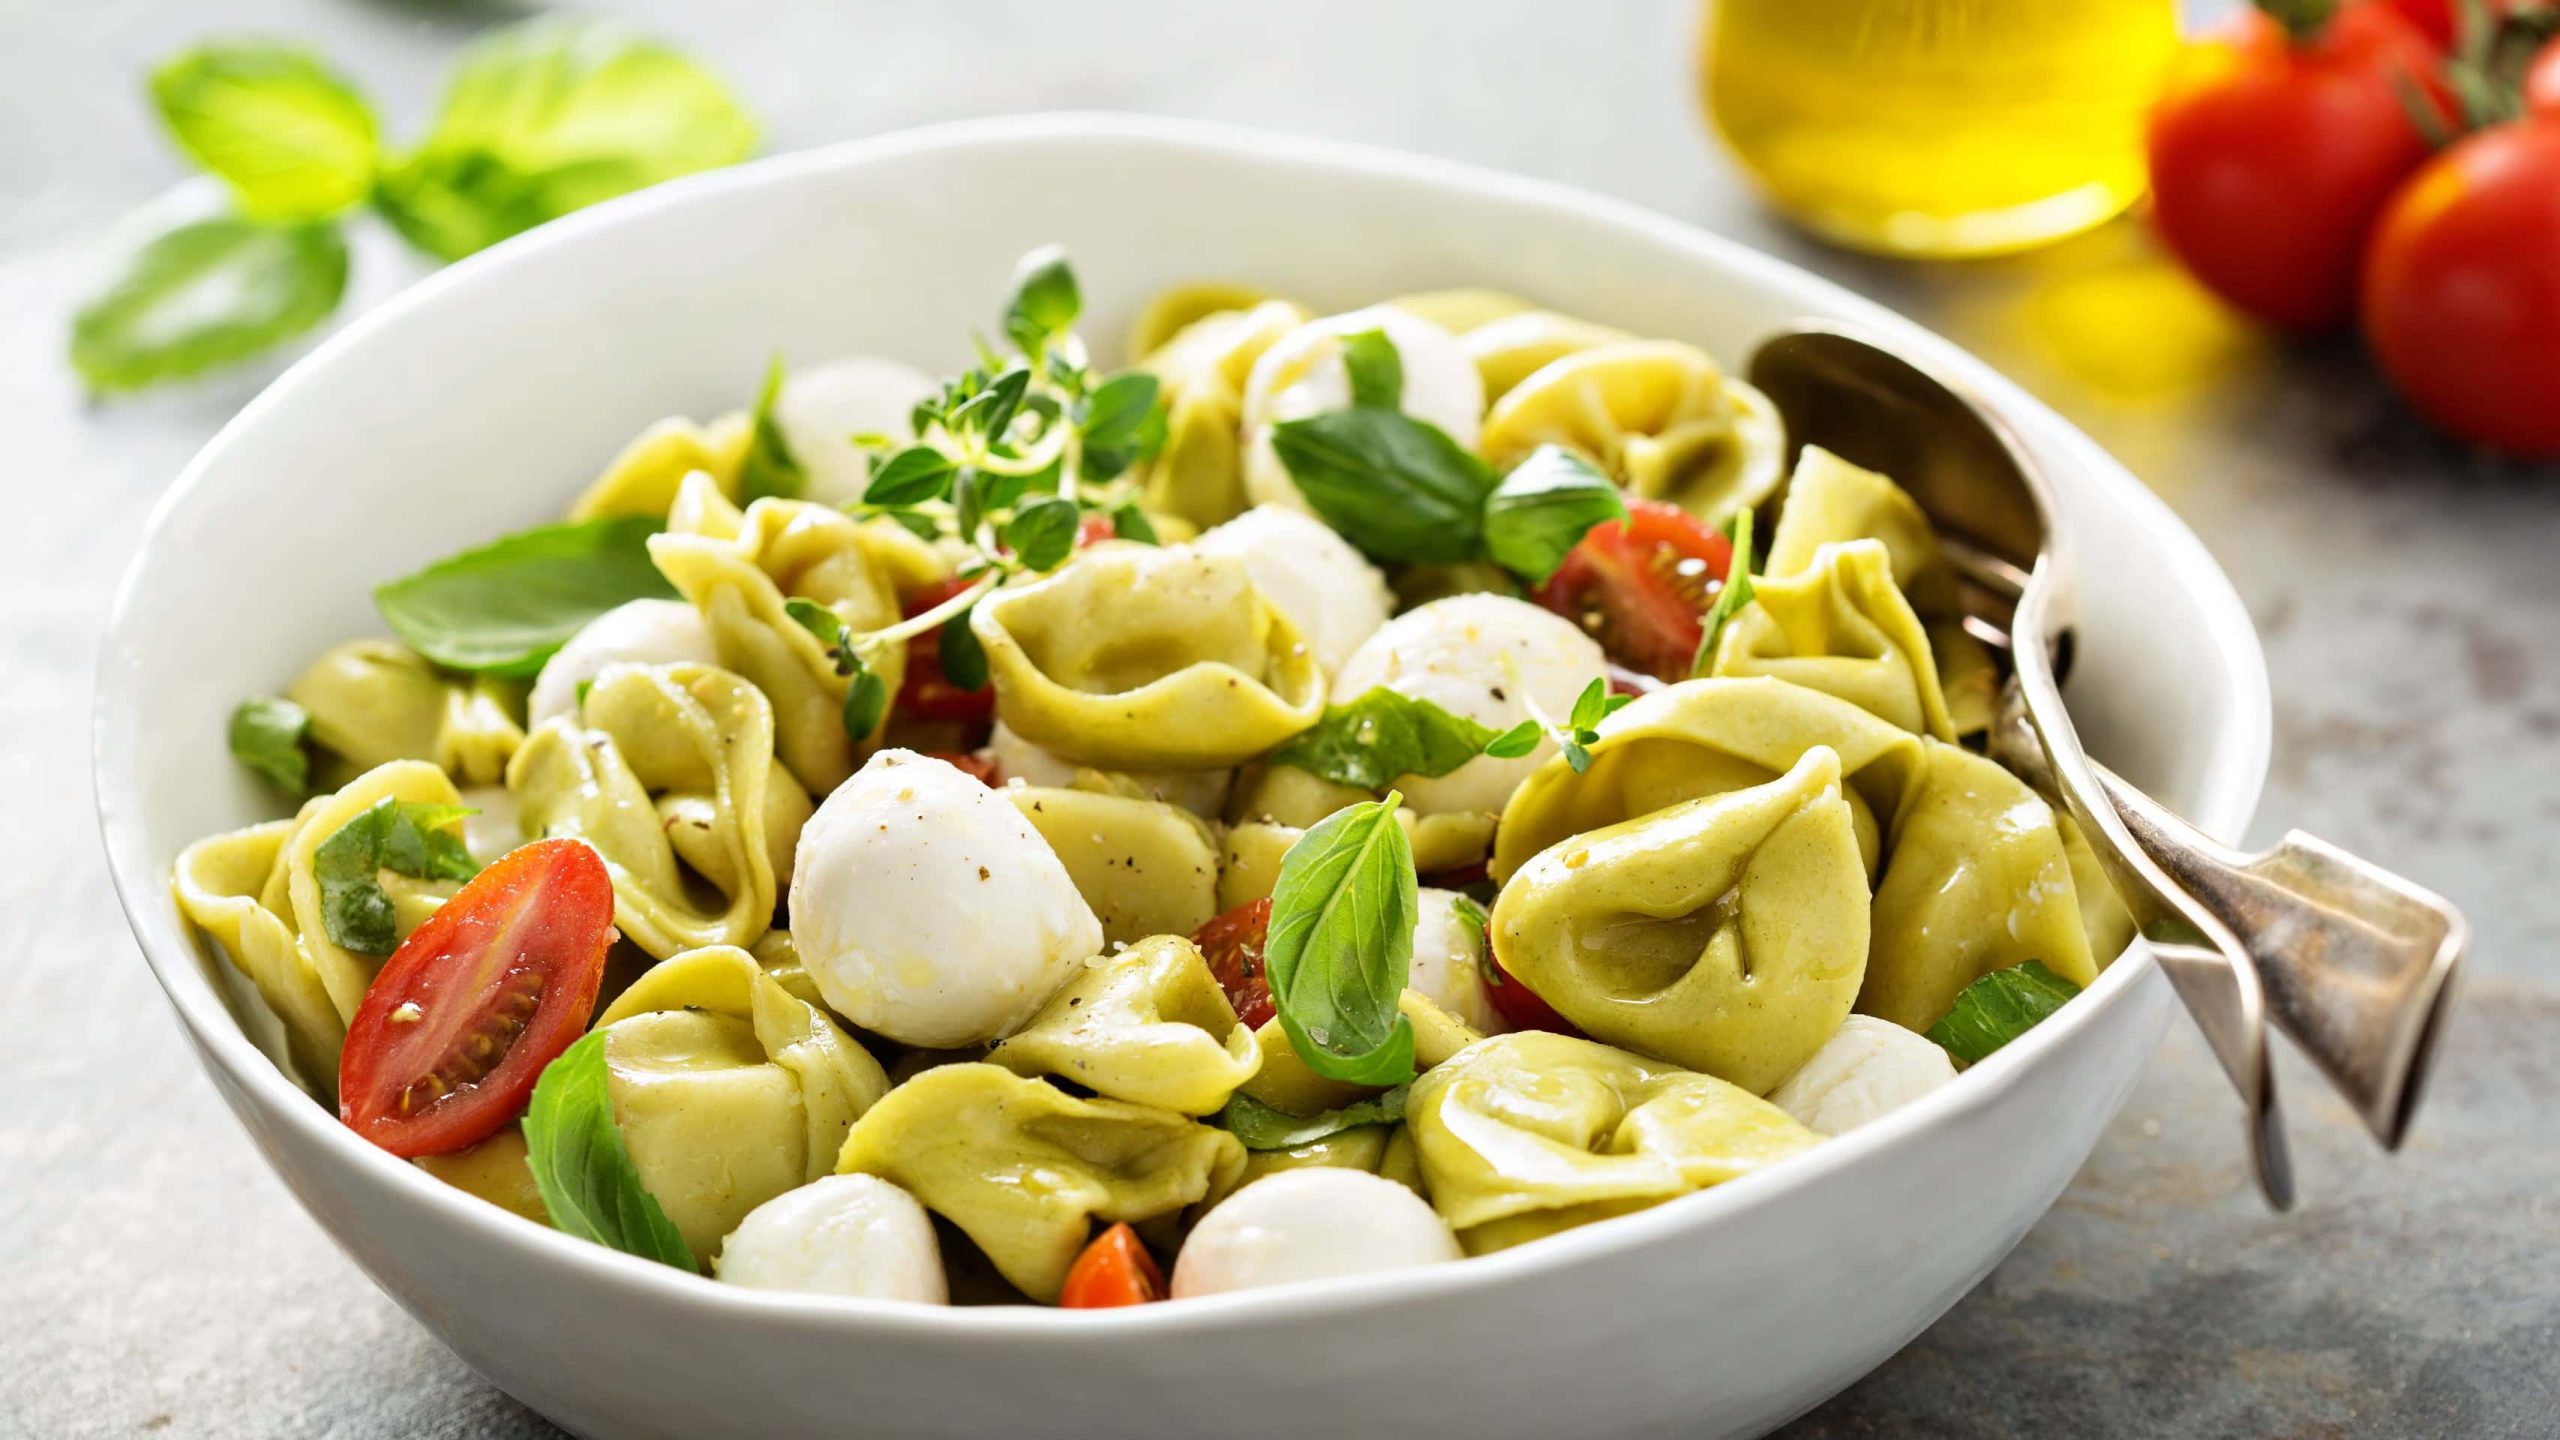 Schale mit Tortellini-Salat mitMOzzarella-Kügelchen, frischen Tomaten und Basilikum.